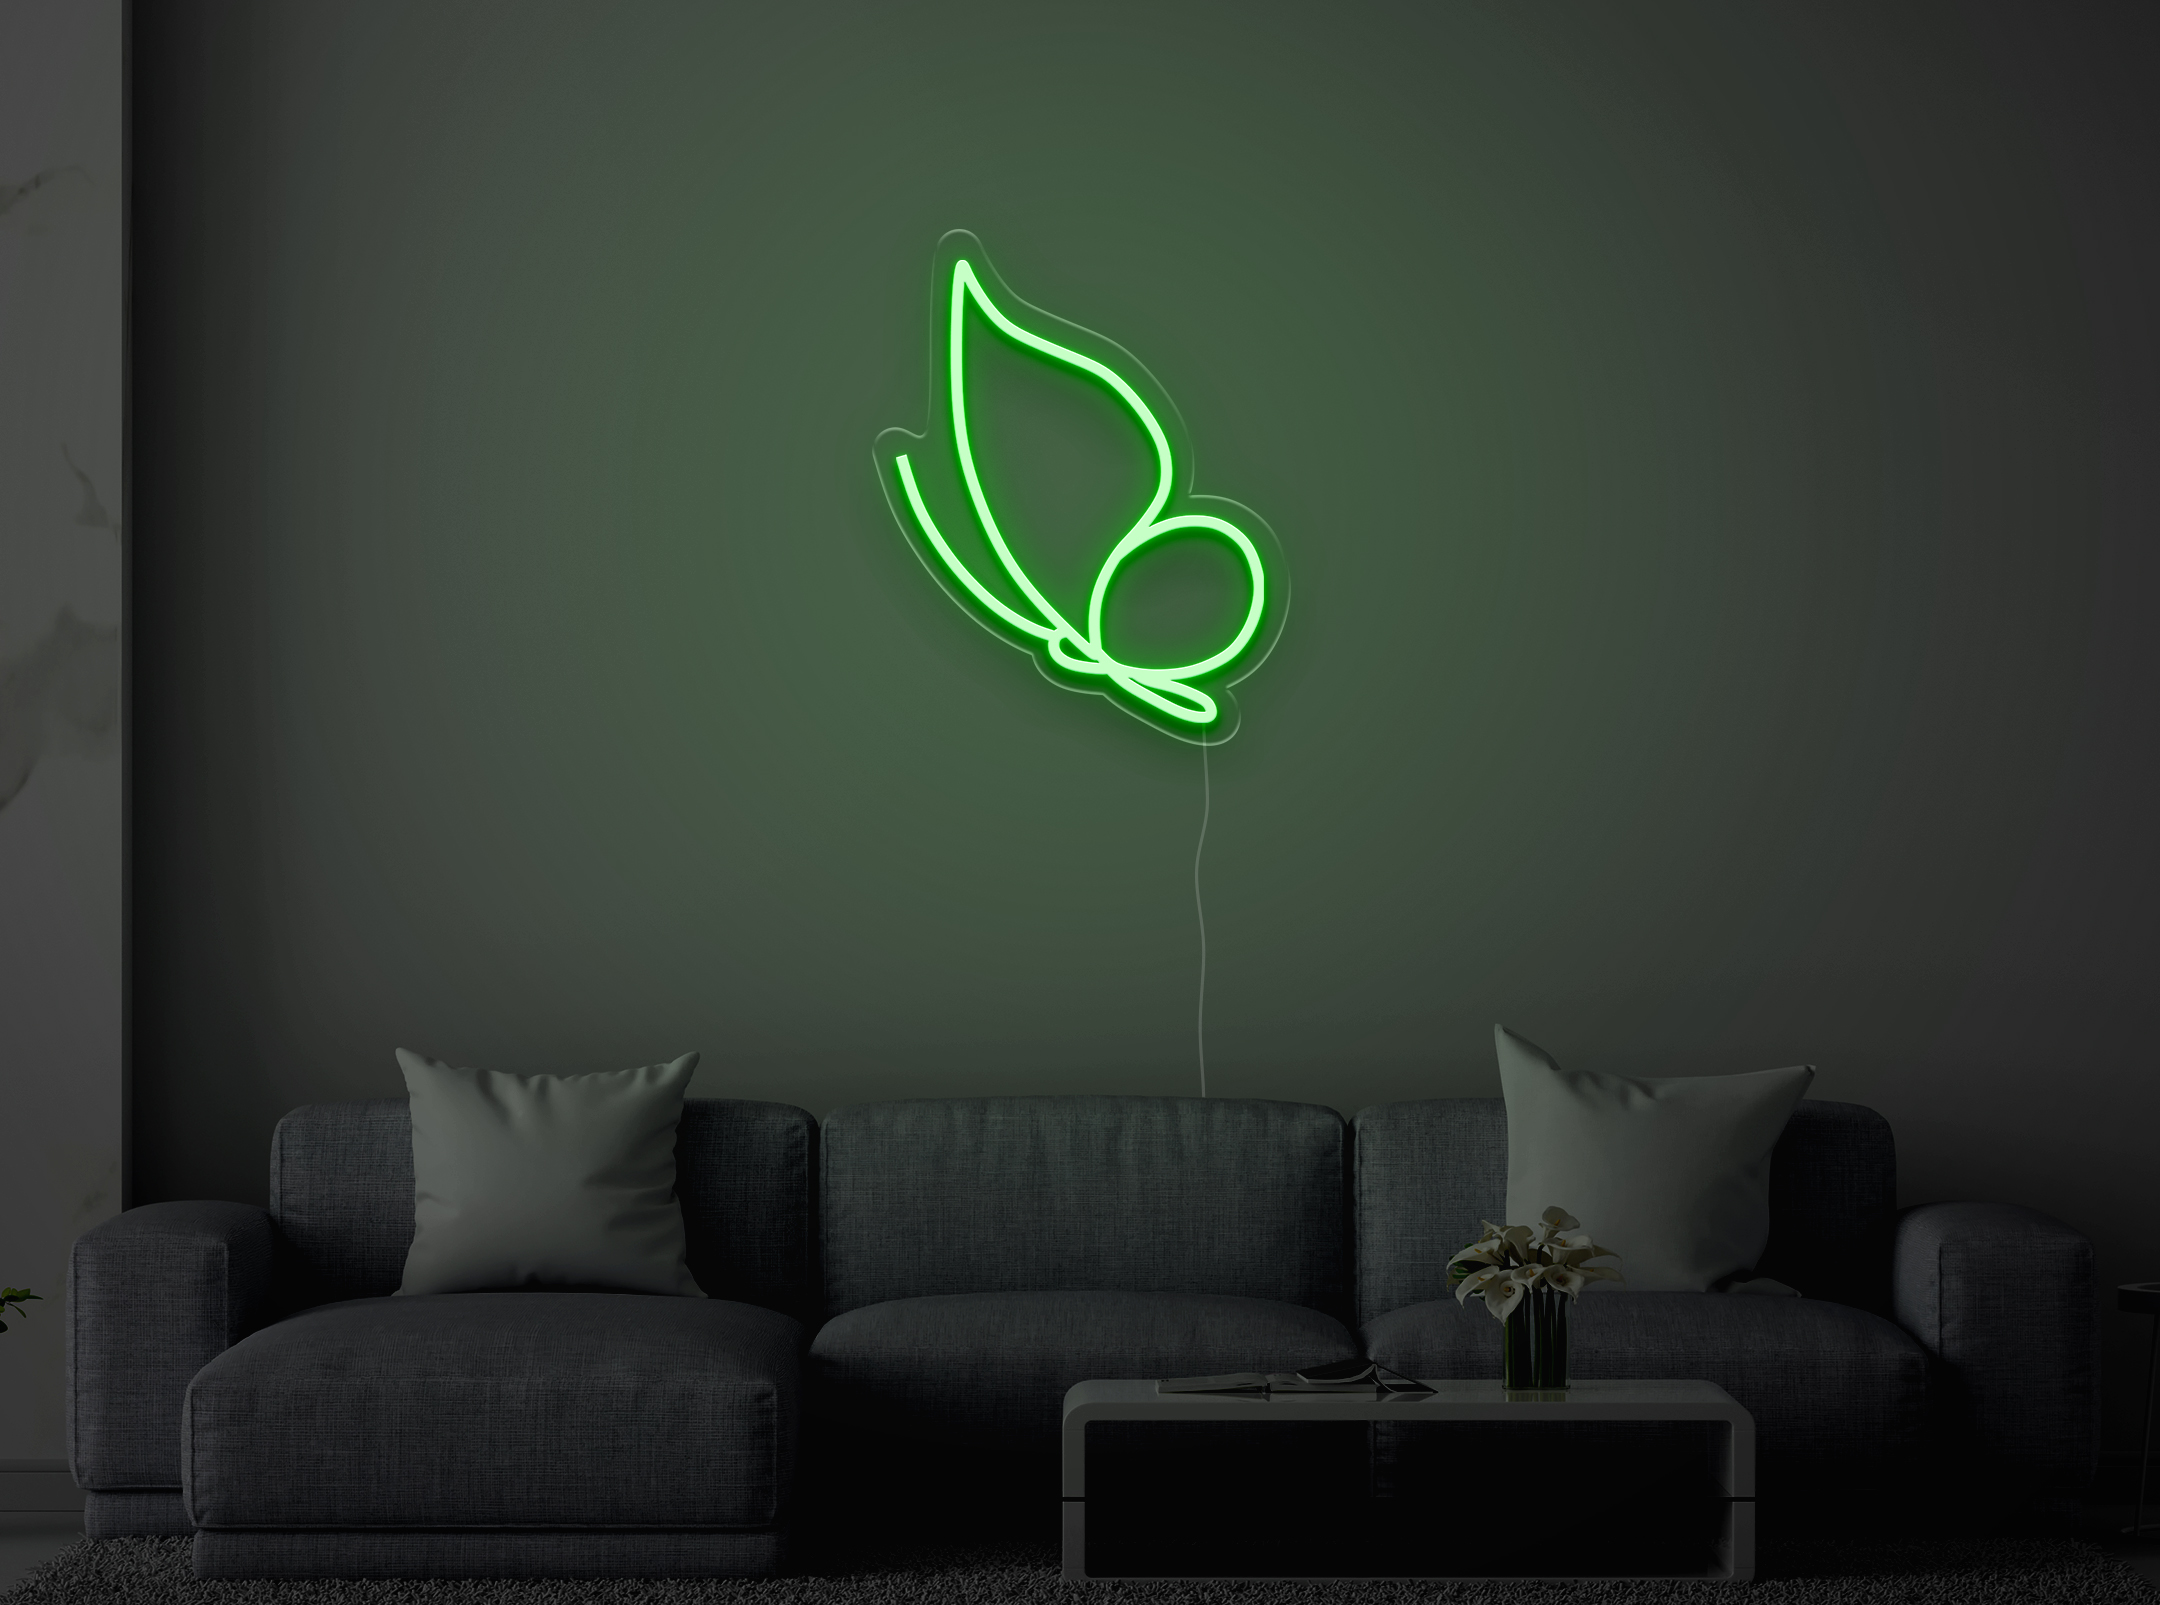 Schmetterling Fliegen - Neon LED Schild